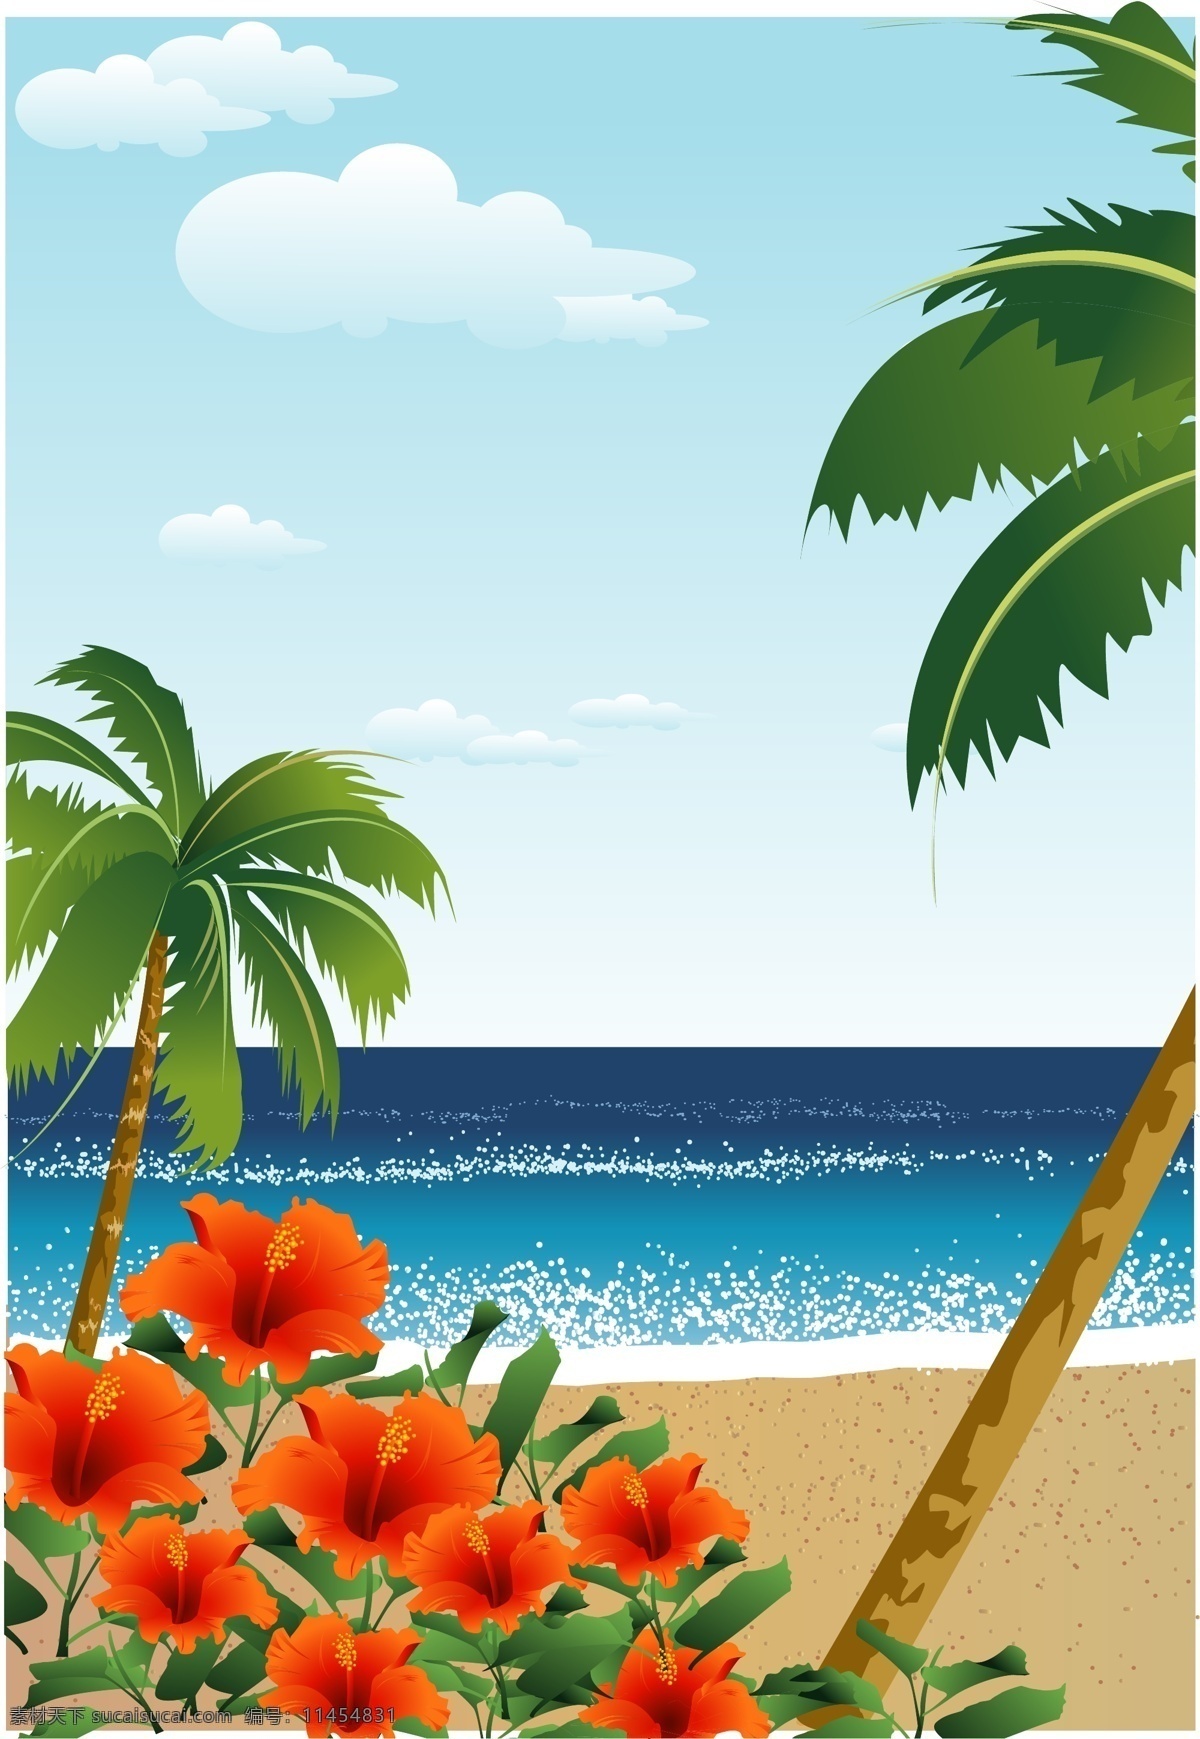 波光粼粼 海面 沙滩 盛开 扶 桑花 朵朵 海滩 　 椰树 自然景观 自然风景 矢量图库